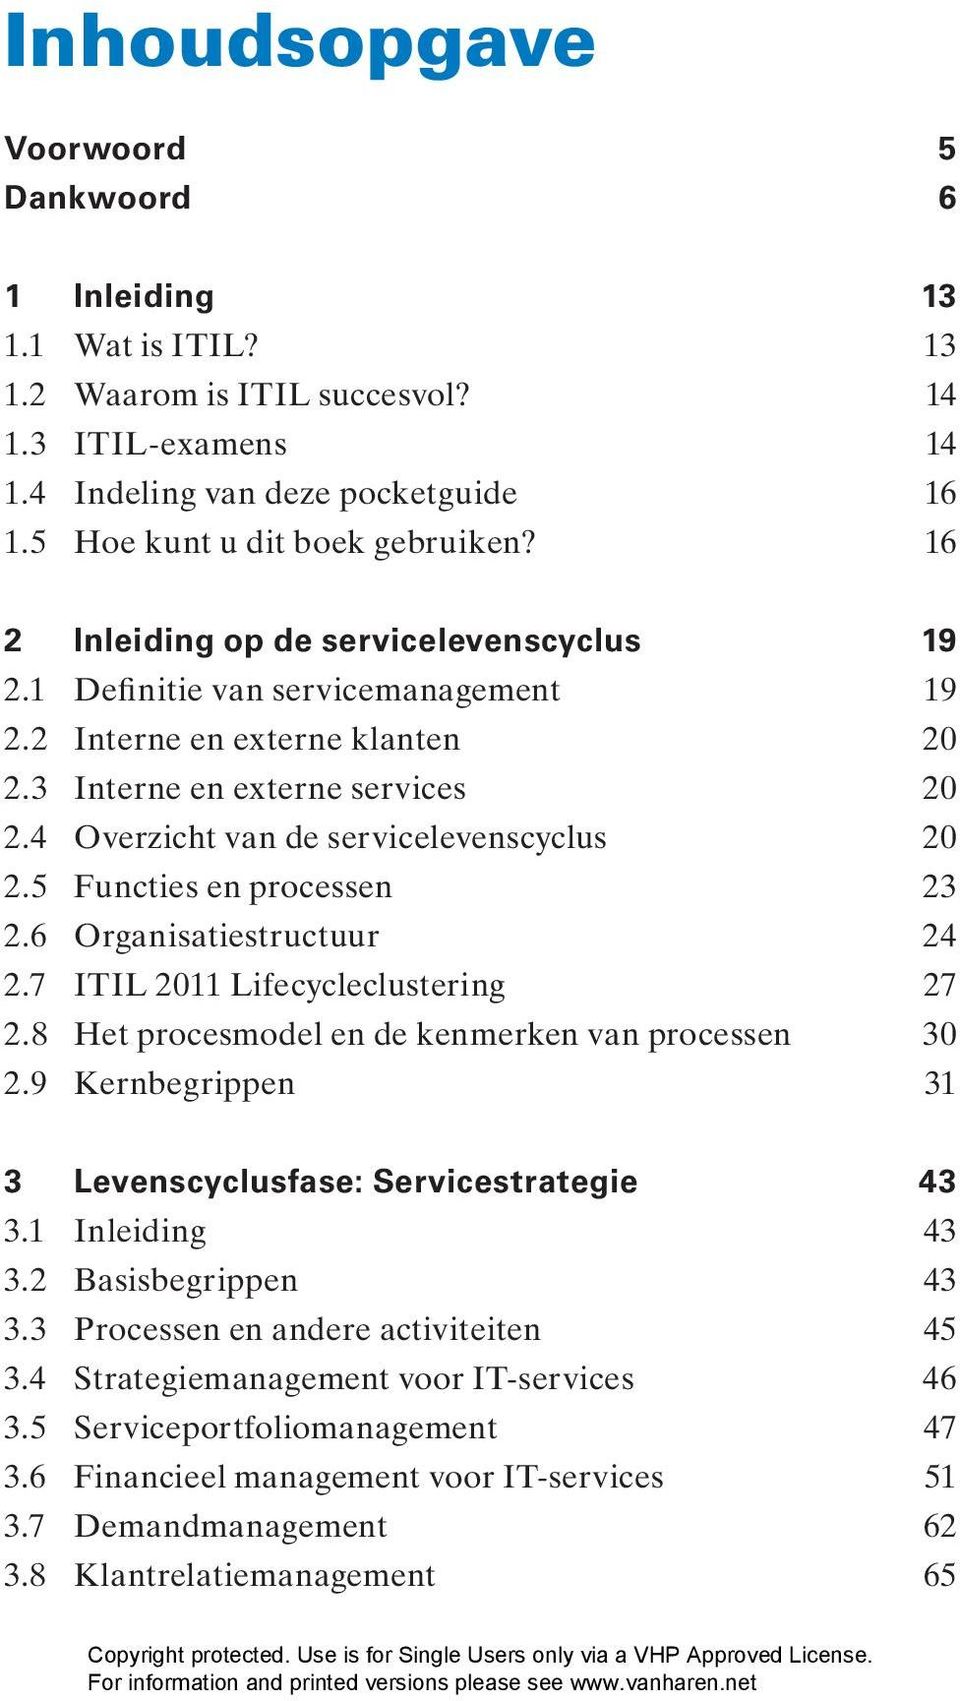 5 Functies en processen 23 2.6 Organisatiestructuur 24 2.7 ITIL 2011 Lifecycleclustering 27 2.8 Het procesmodel en de kenmerken van processen 30 2.